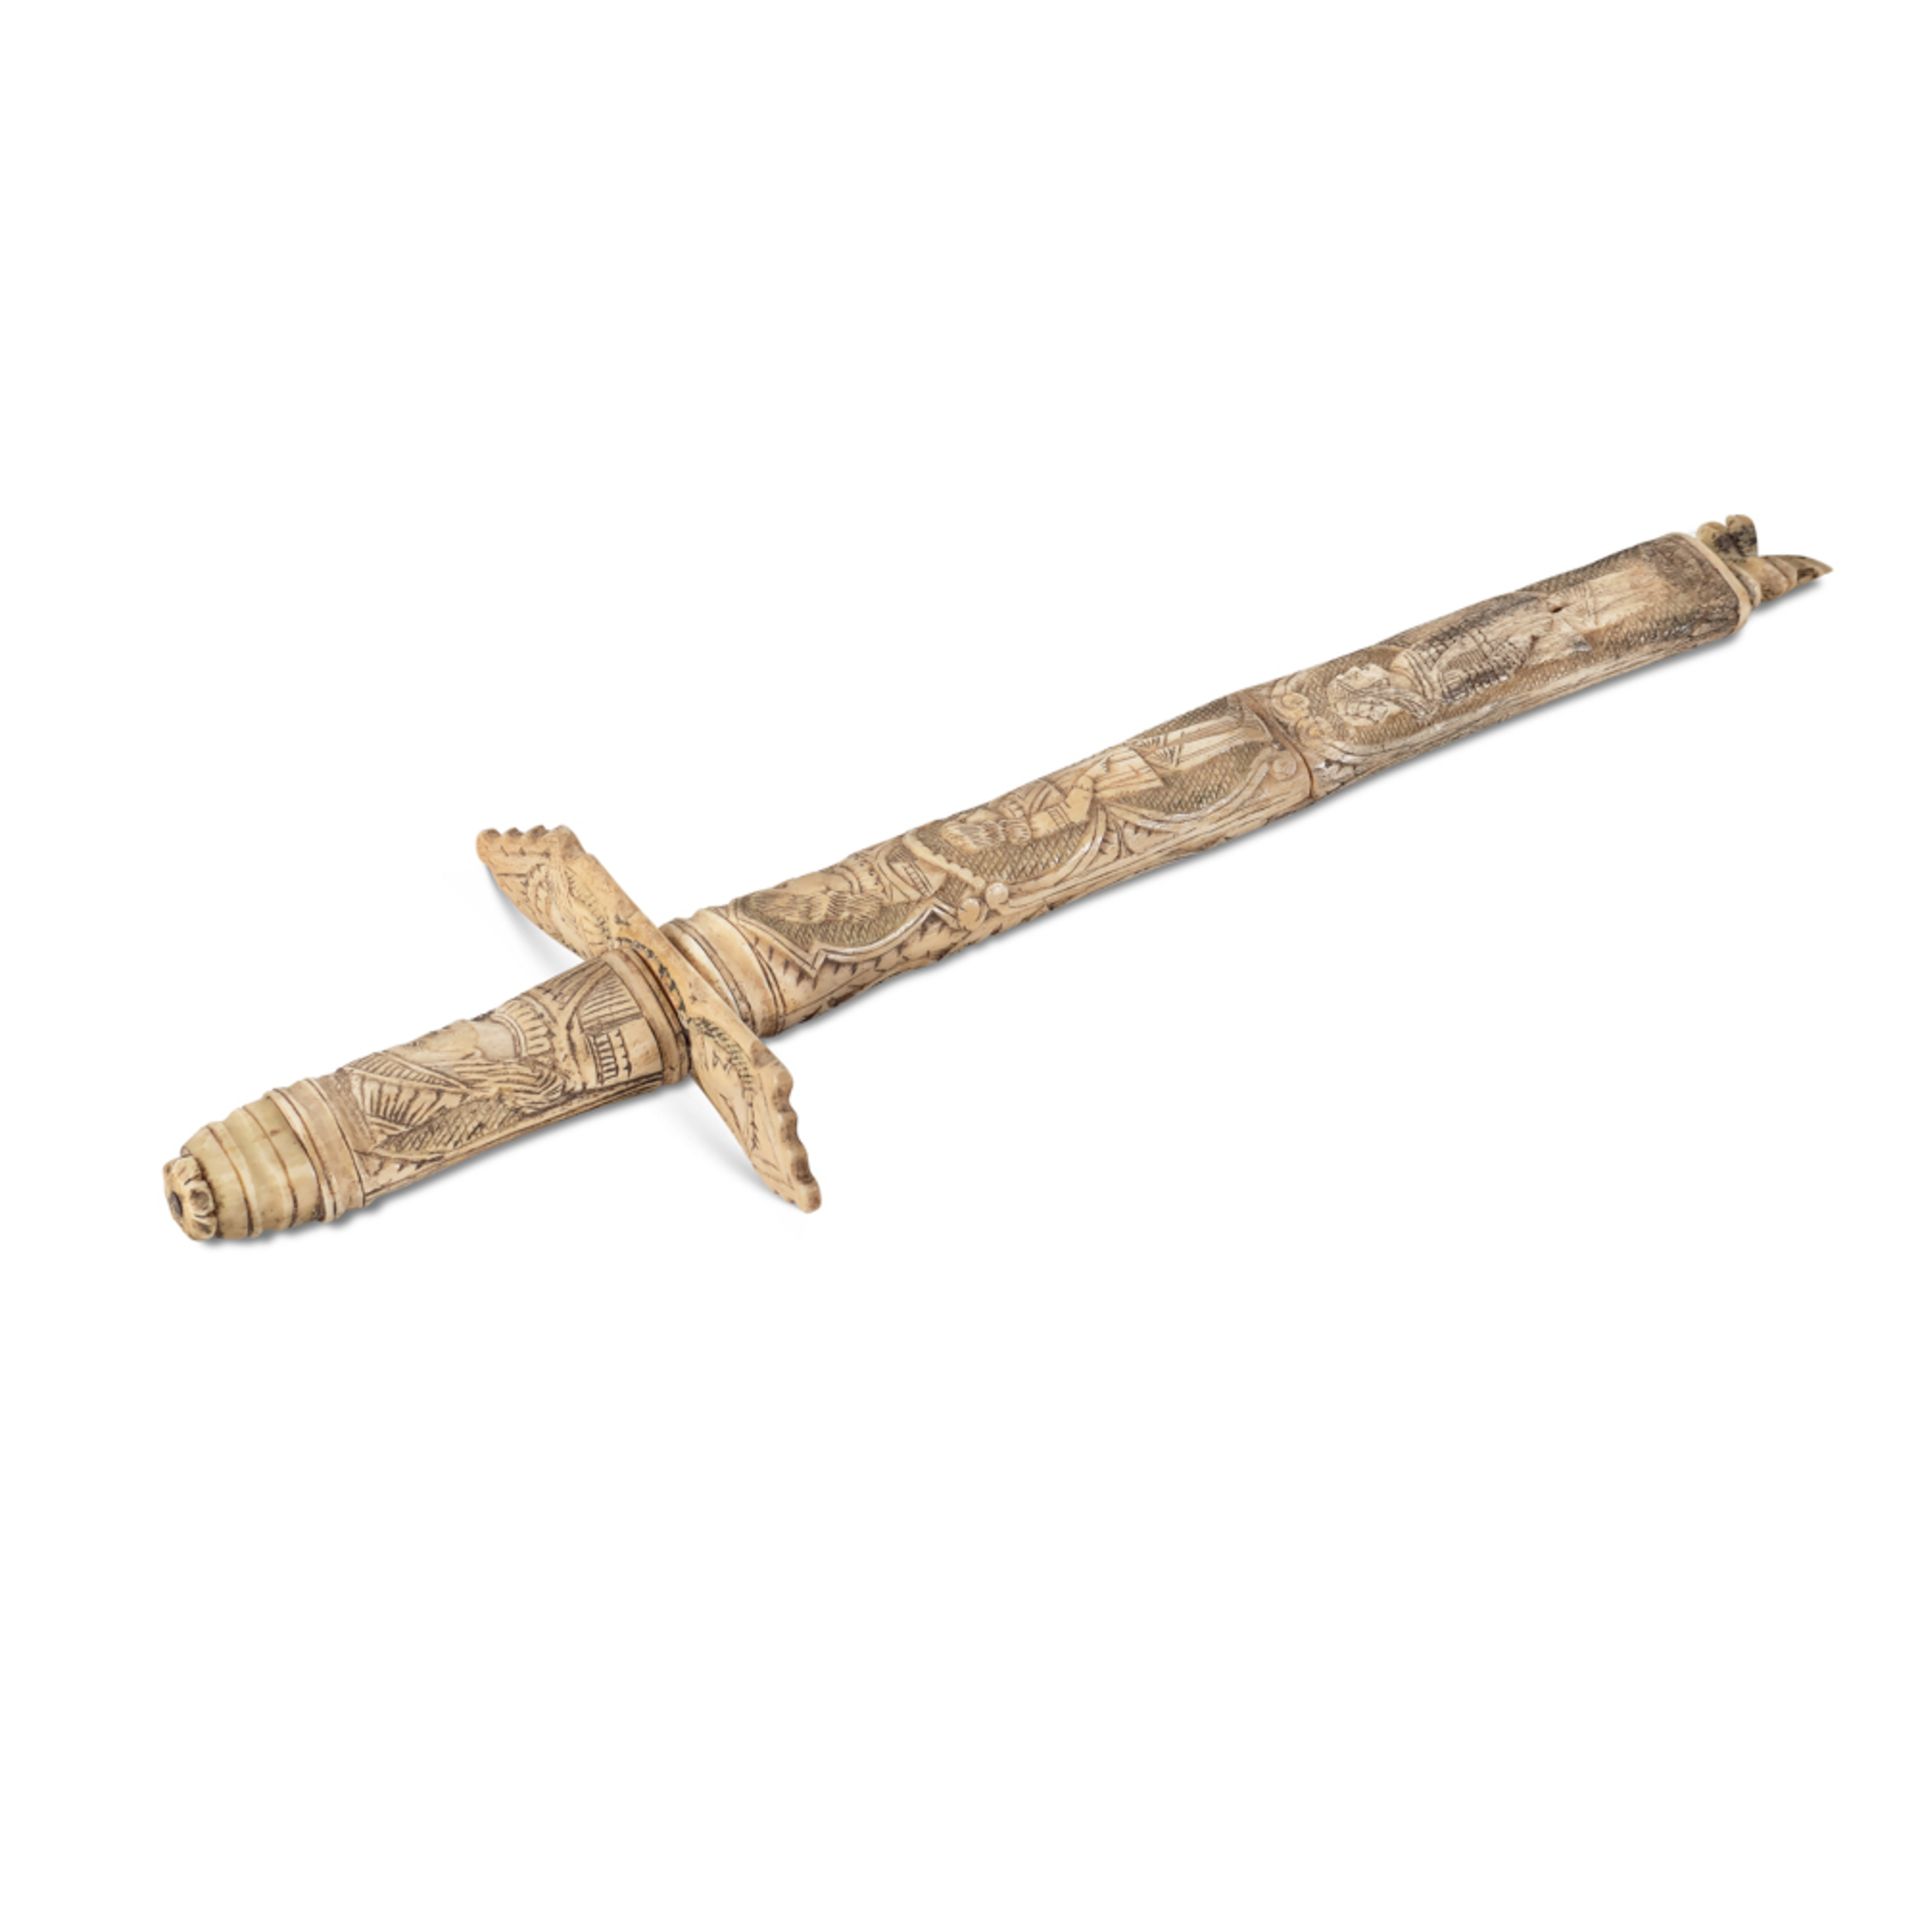 Bone dagger Germany, 17th-18th century l. 52 cm.